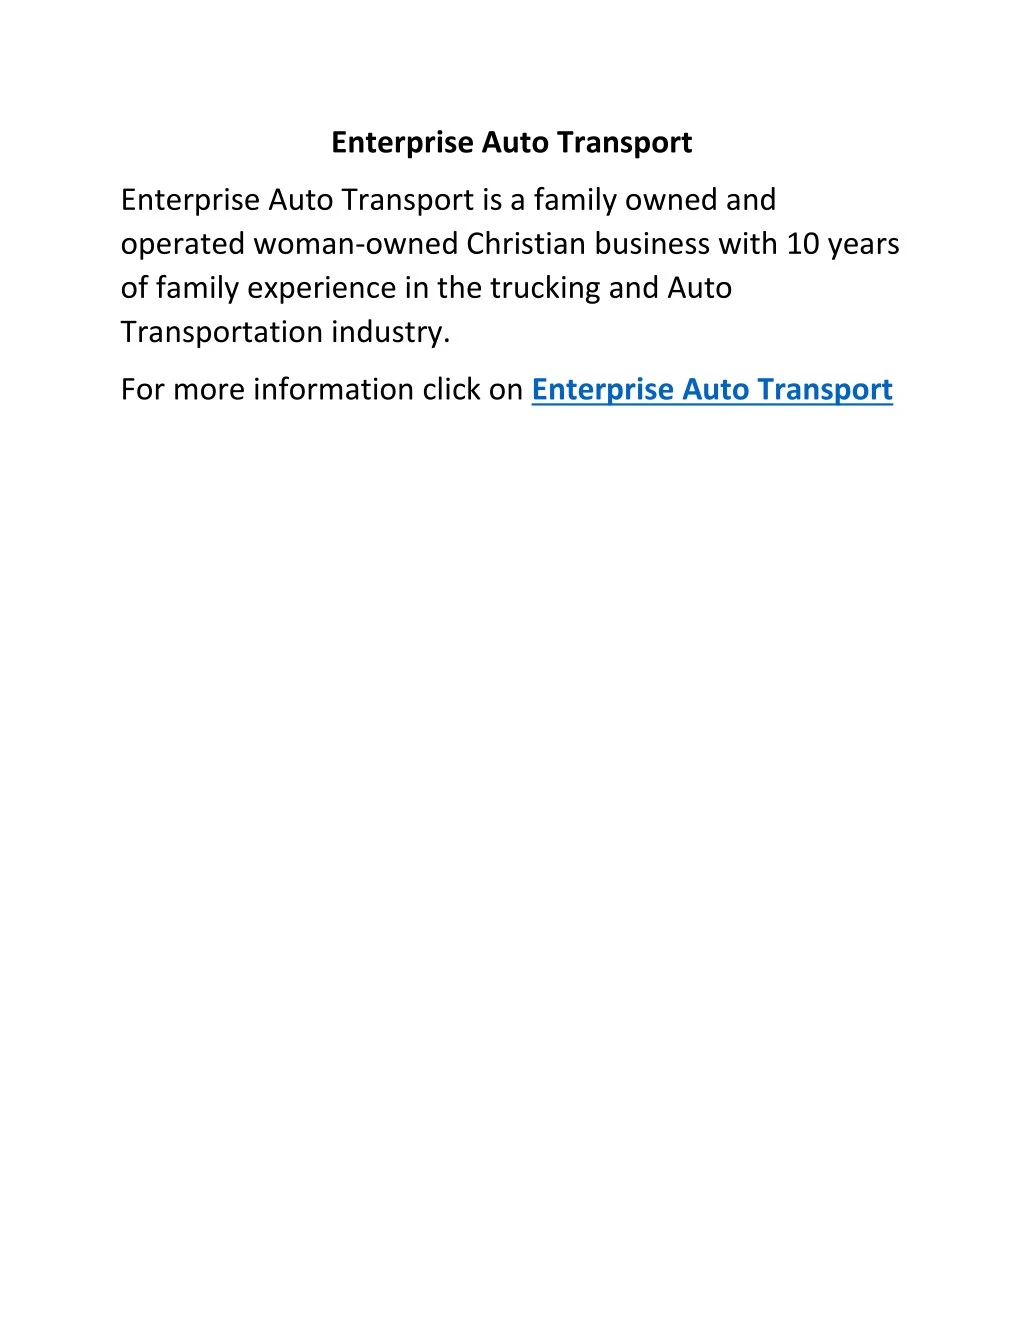 enterprise auto transport